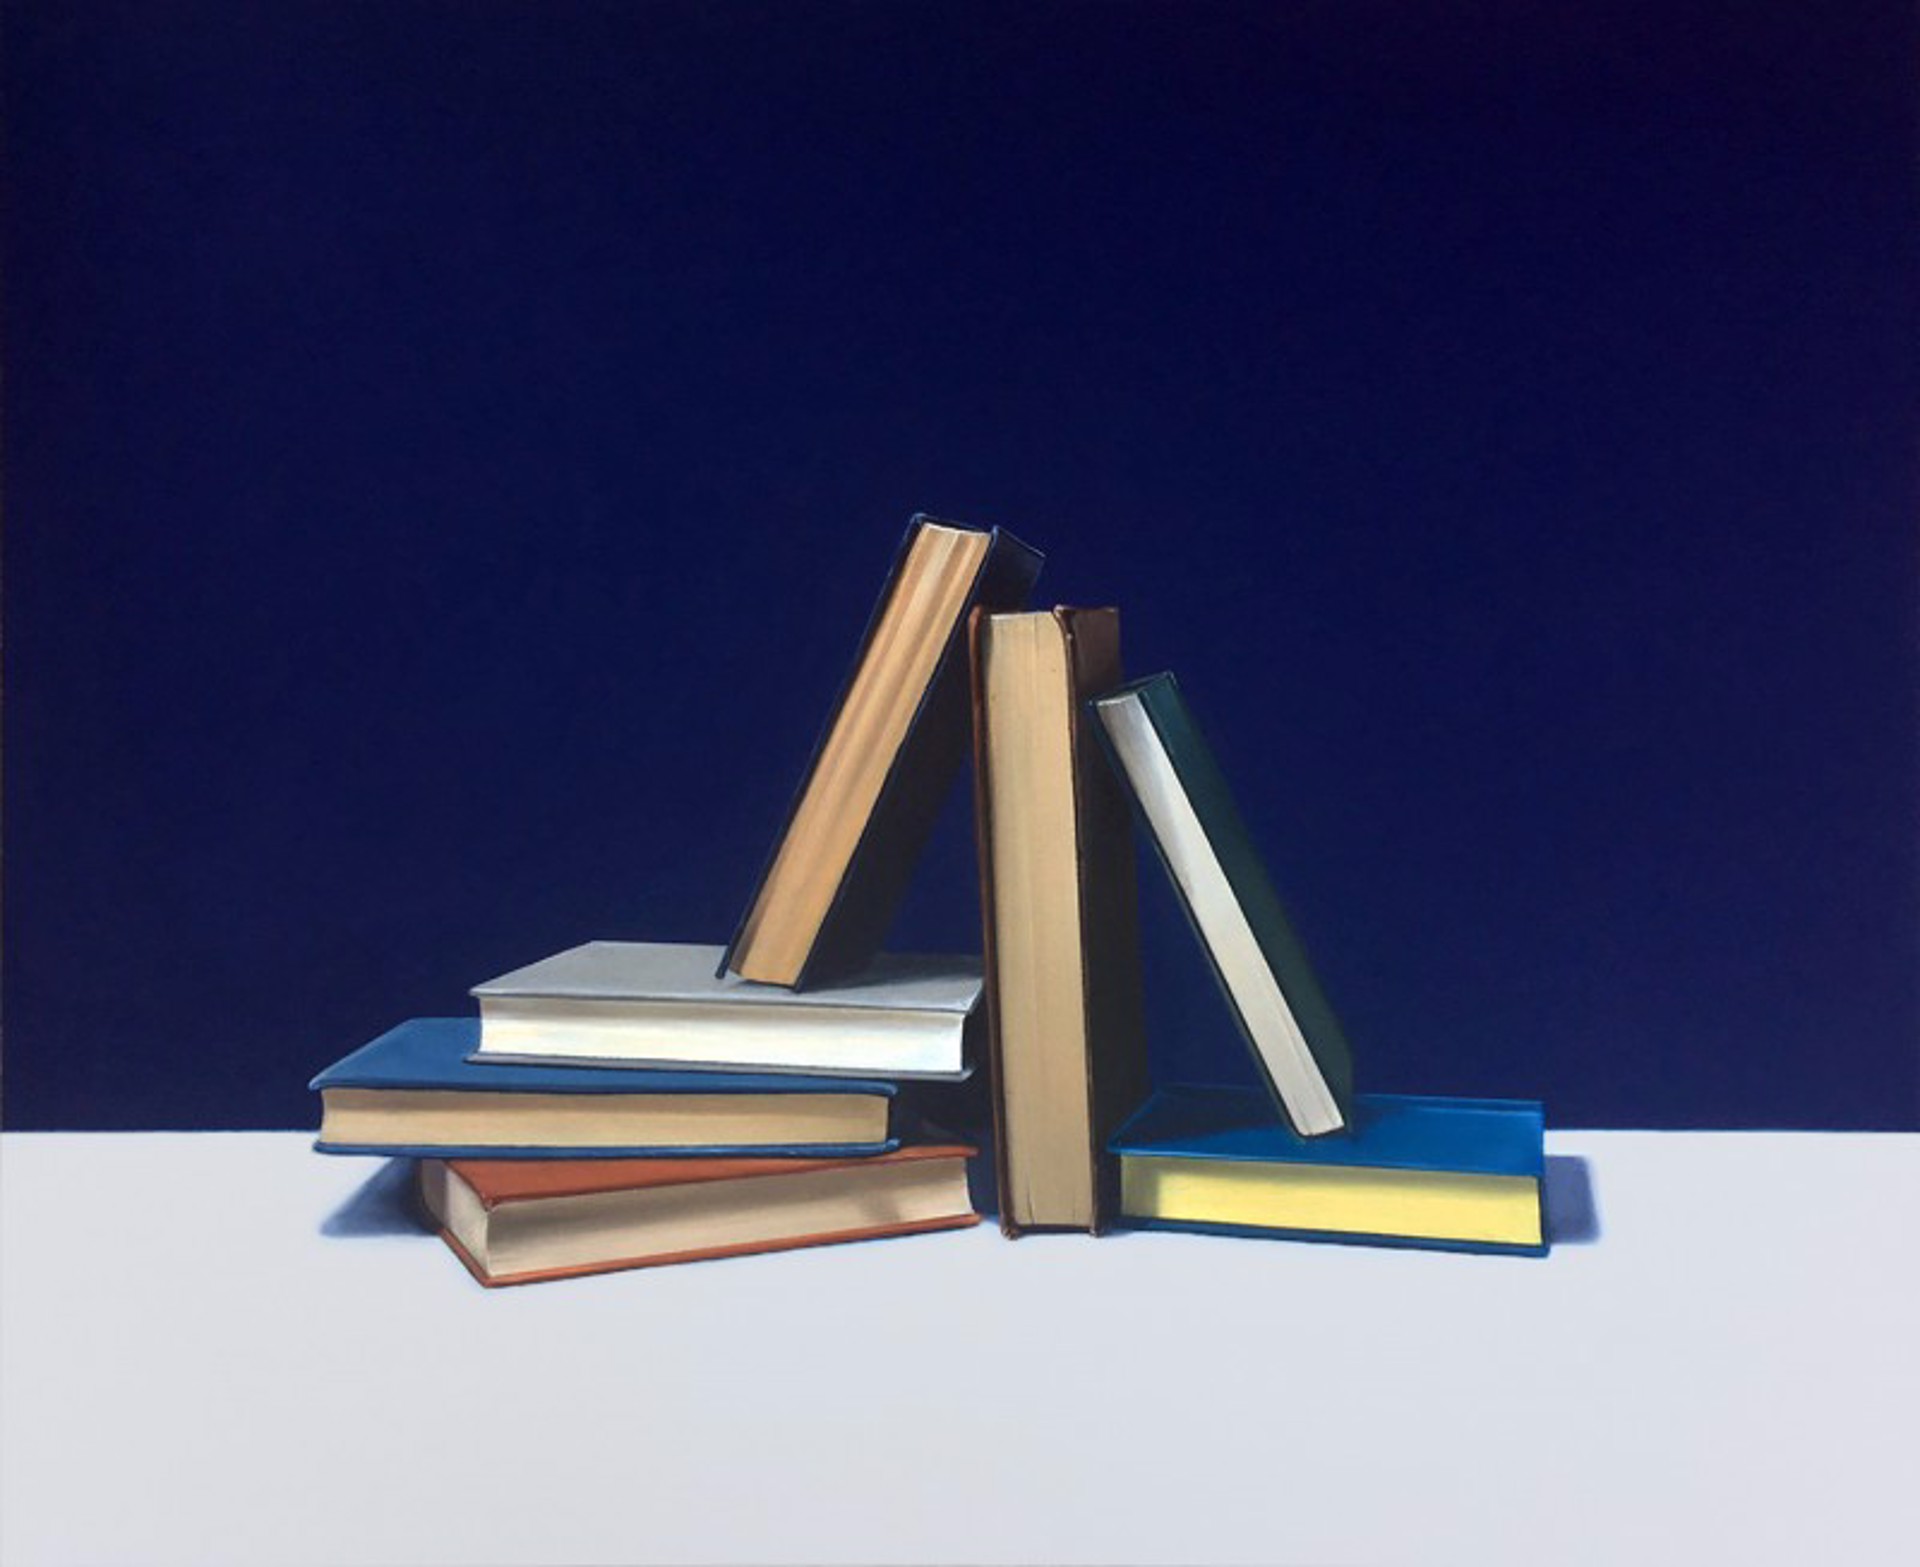 Building Books by Jeanne Vadeboncoeur